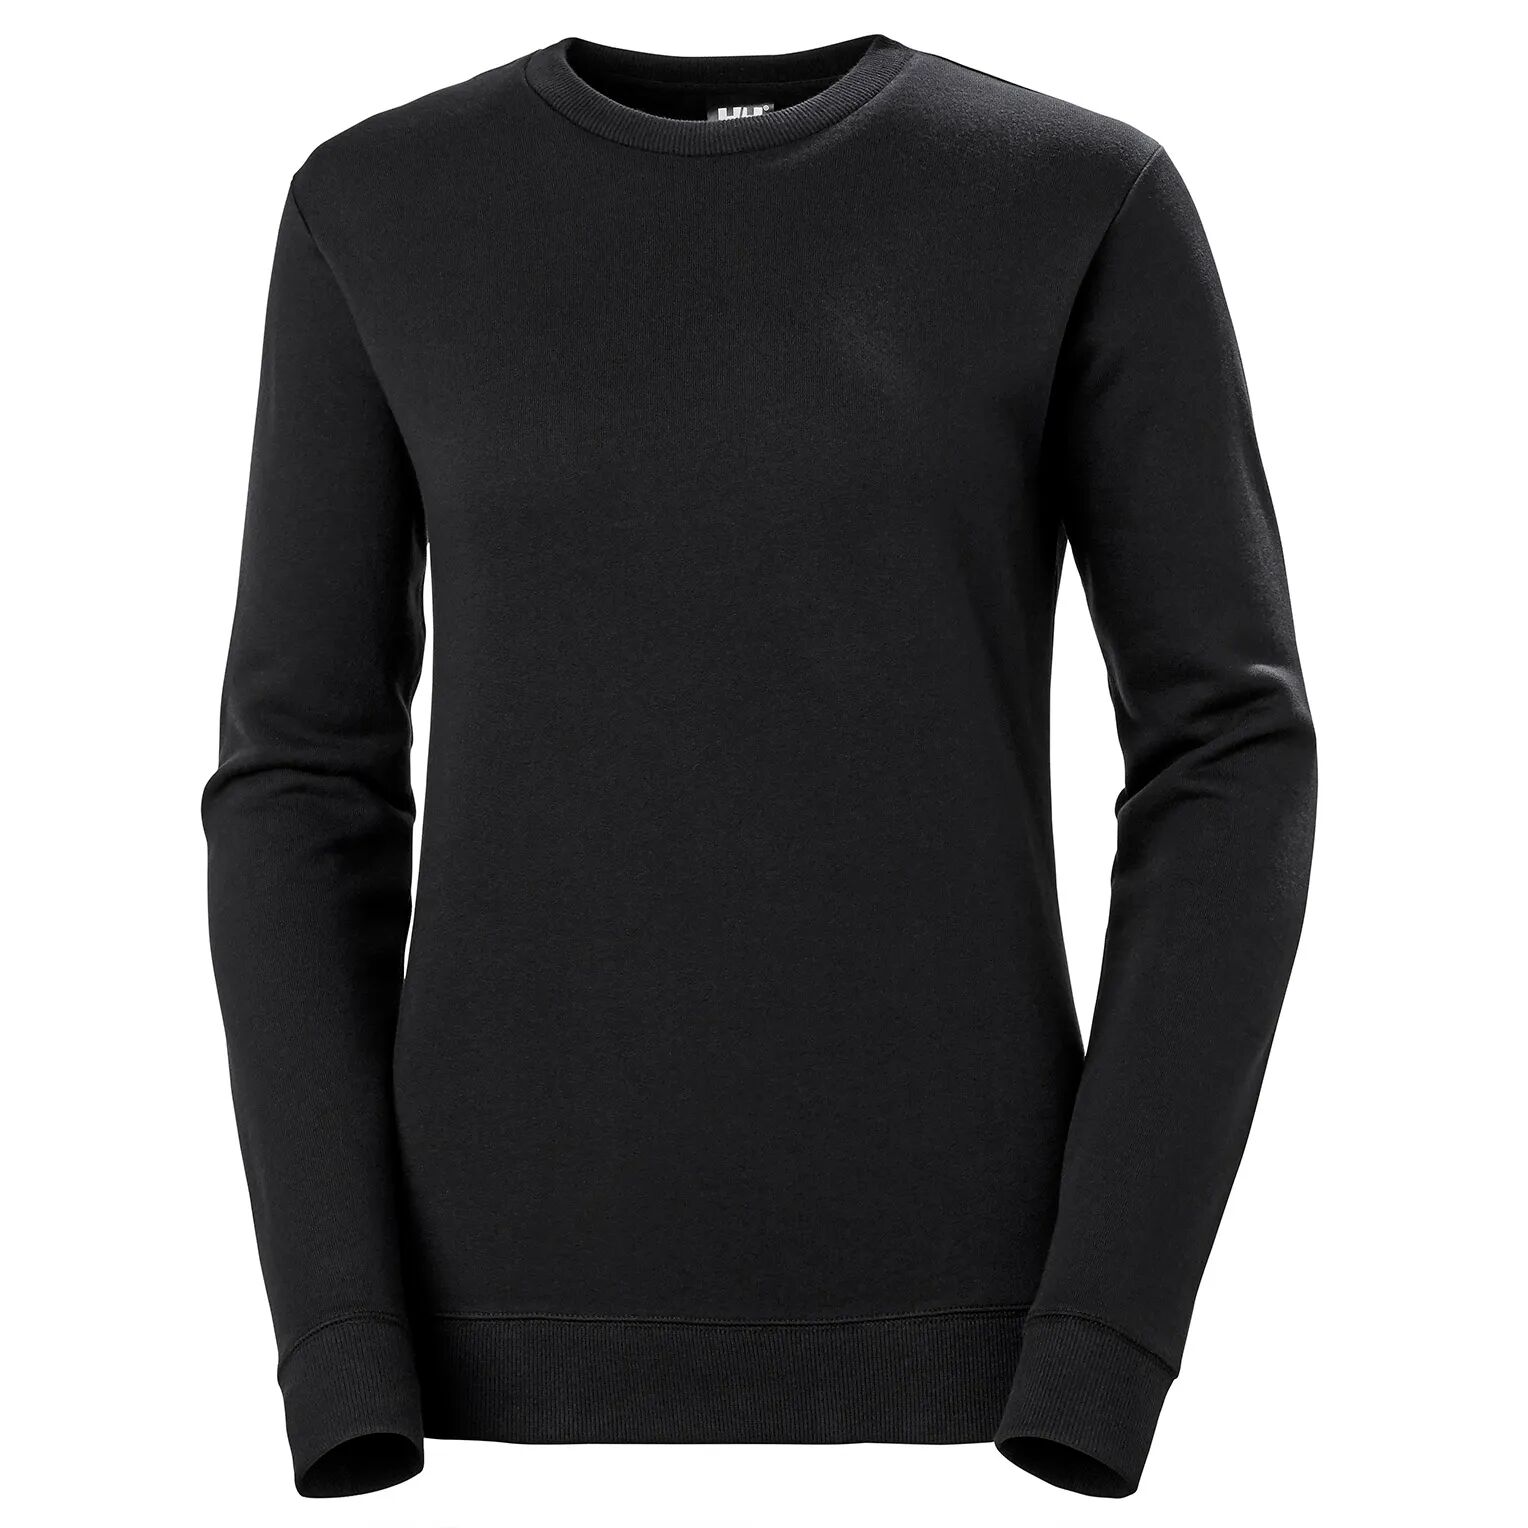 HH Workwear Helly Hansen WorkwearWomen’s Manchester Cotton Sweater Black L